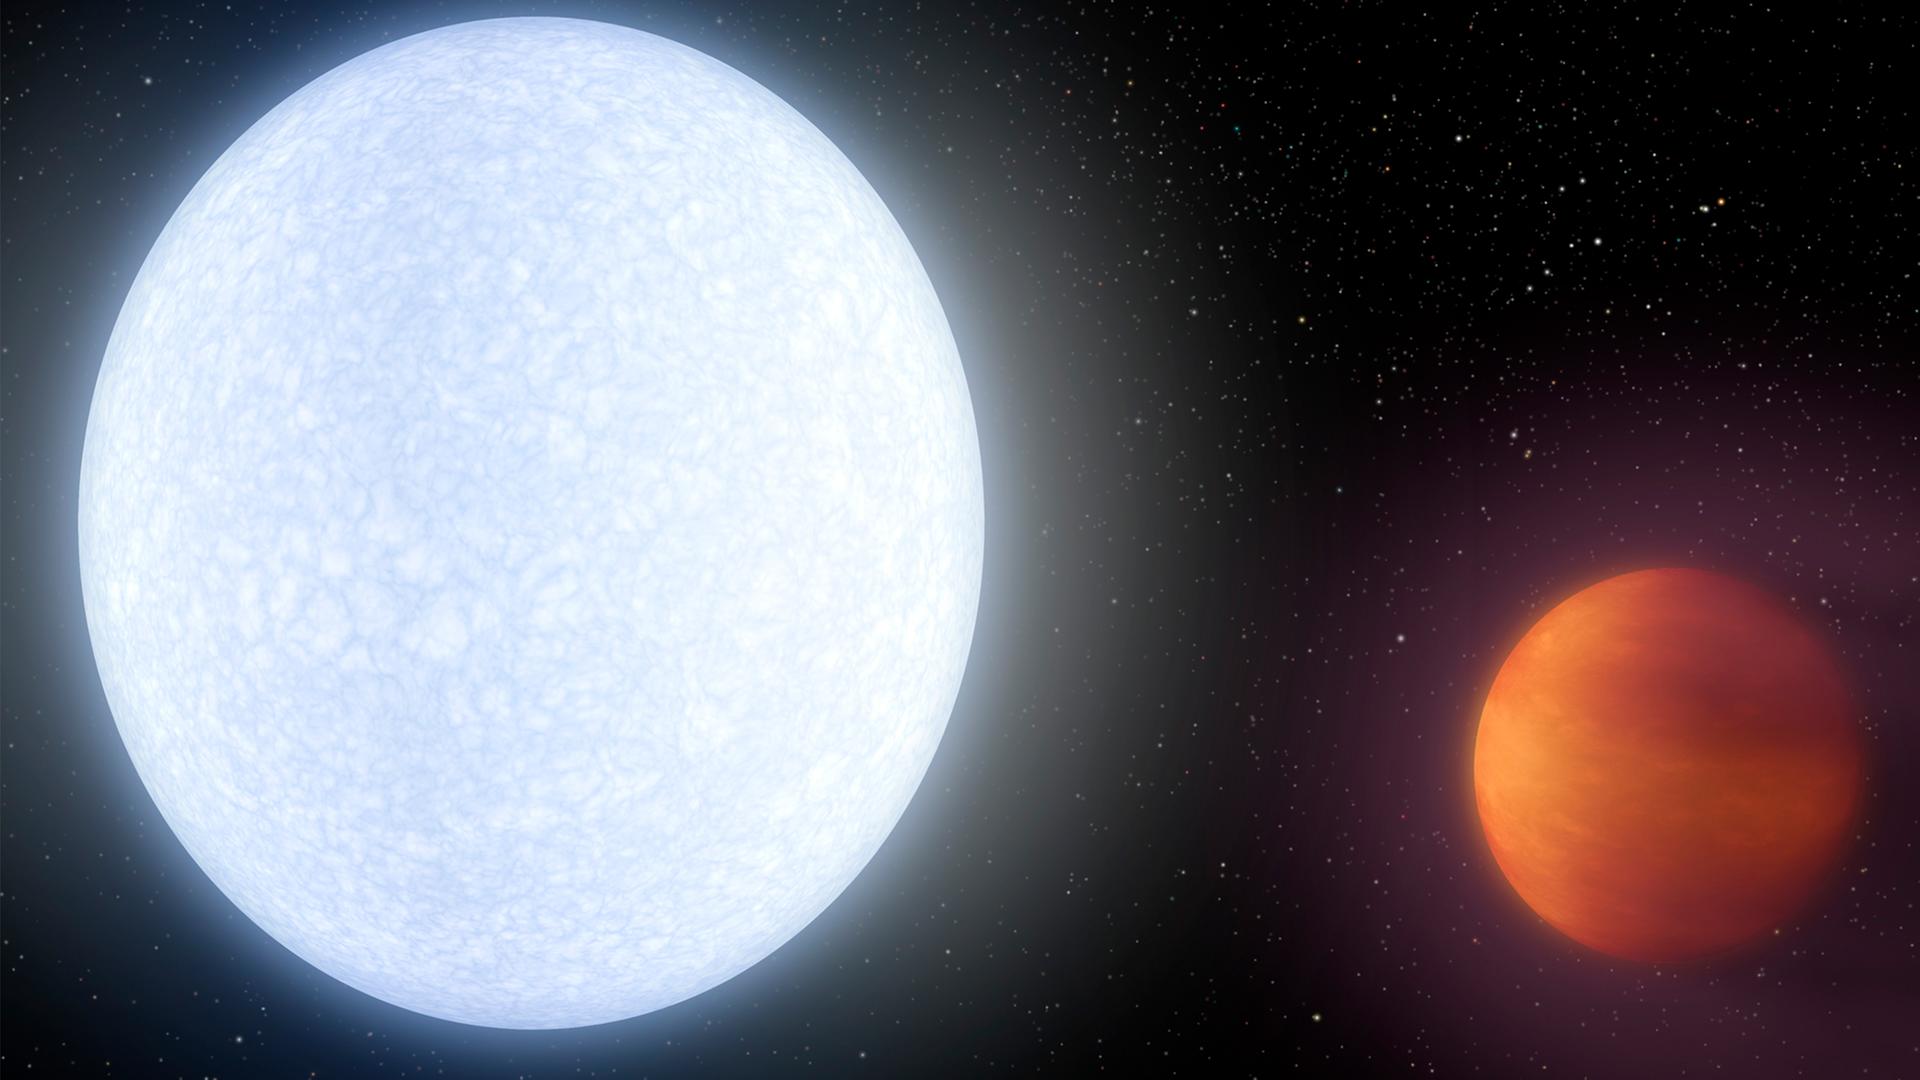 Illustration des bläulich-weiß-leuchtenden Planeten KELT-9b und seines rot-glühenden Sterns KELT-9. Die intensive Strahlung des Sterns heizt die Tagseite des Planeten auf gut 4.300 Grad auf.